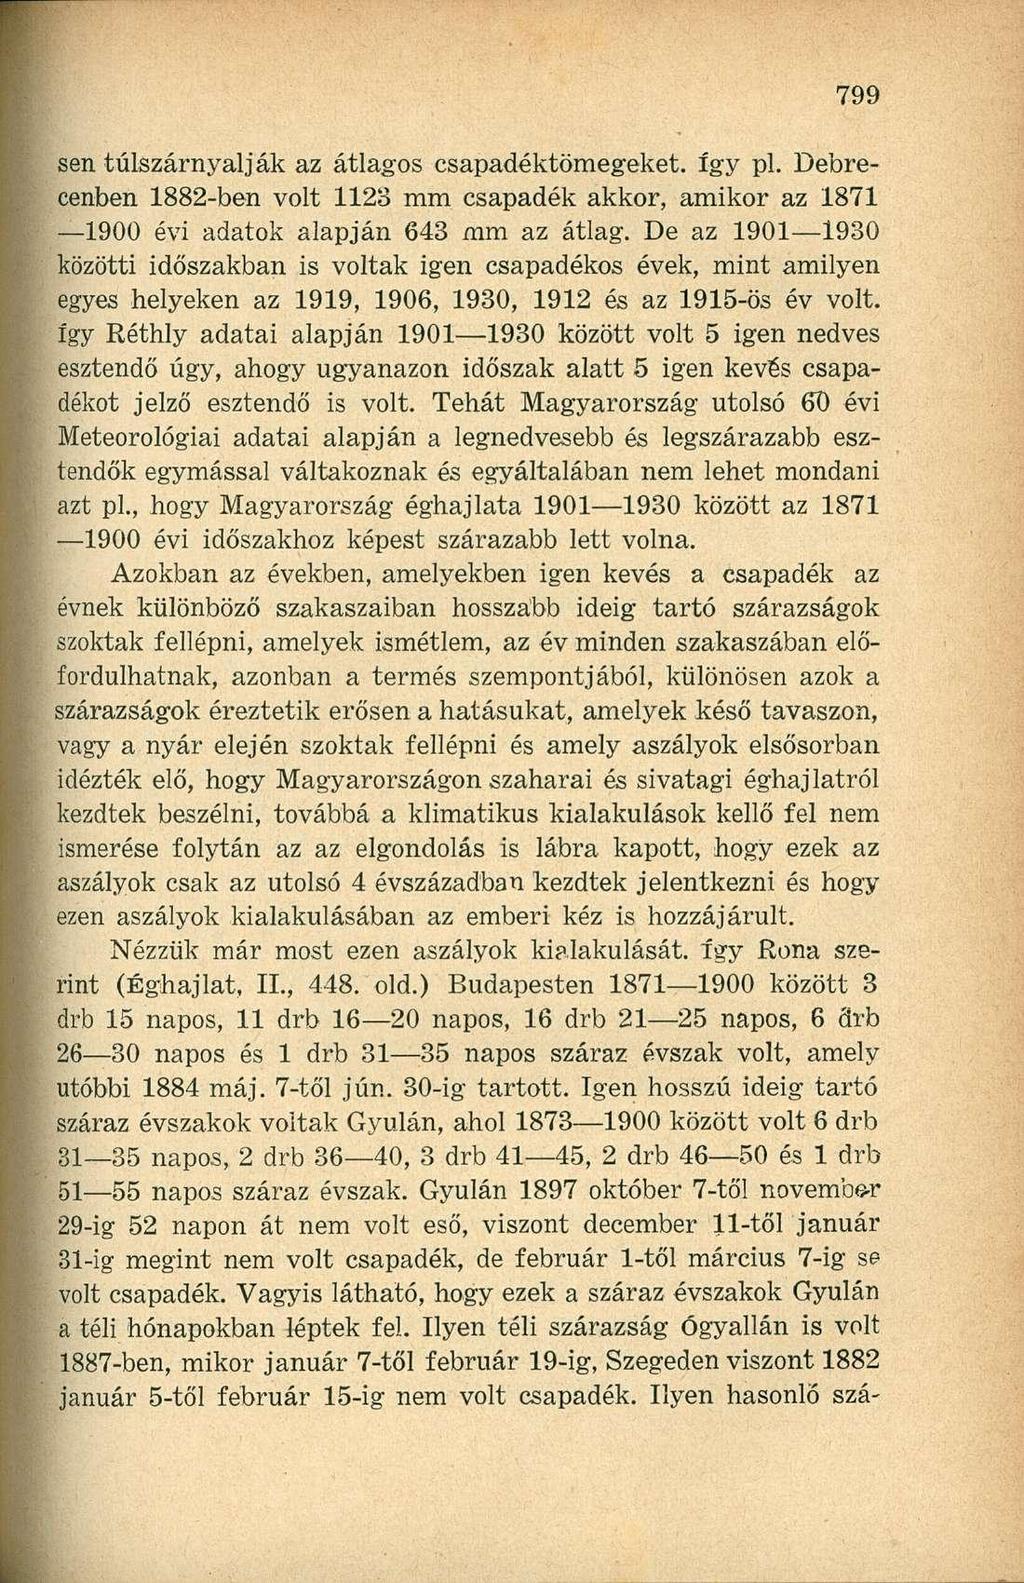 sen túlszárnyalják az átlagos csapadéktömegeket. így pl. Debrecenben 1882-ben volt 1123 mm csapadék akkor, amikor az 1871 1900 évi adatok alapján 643 mm az átlag.